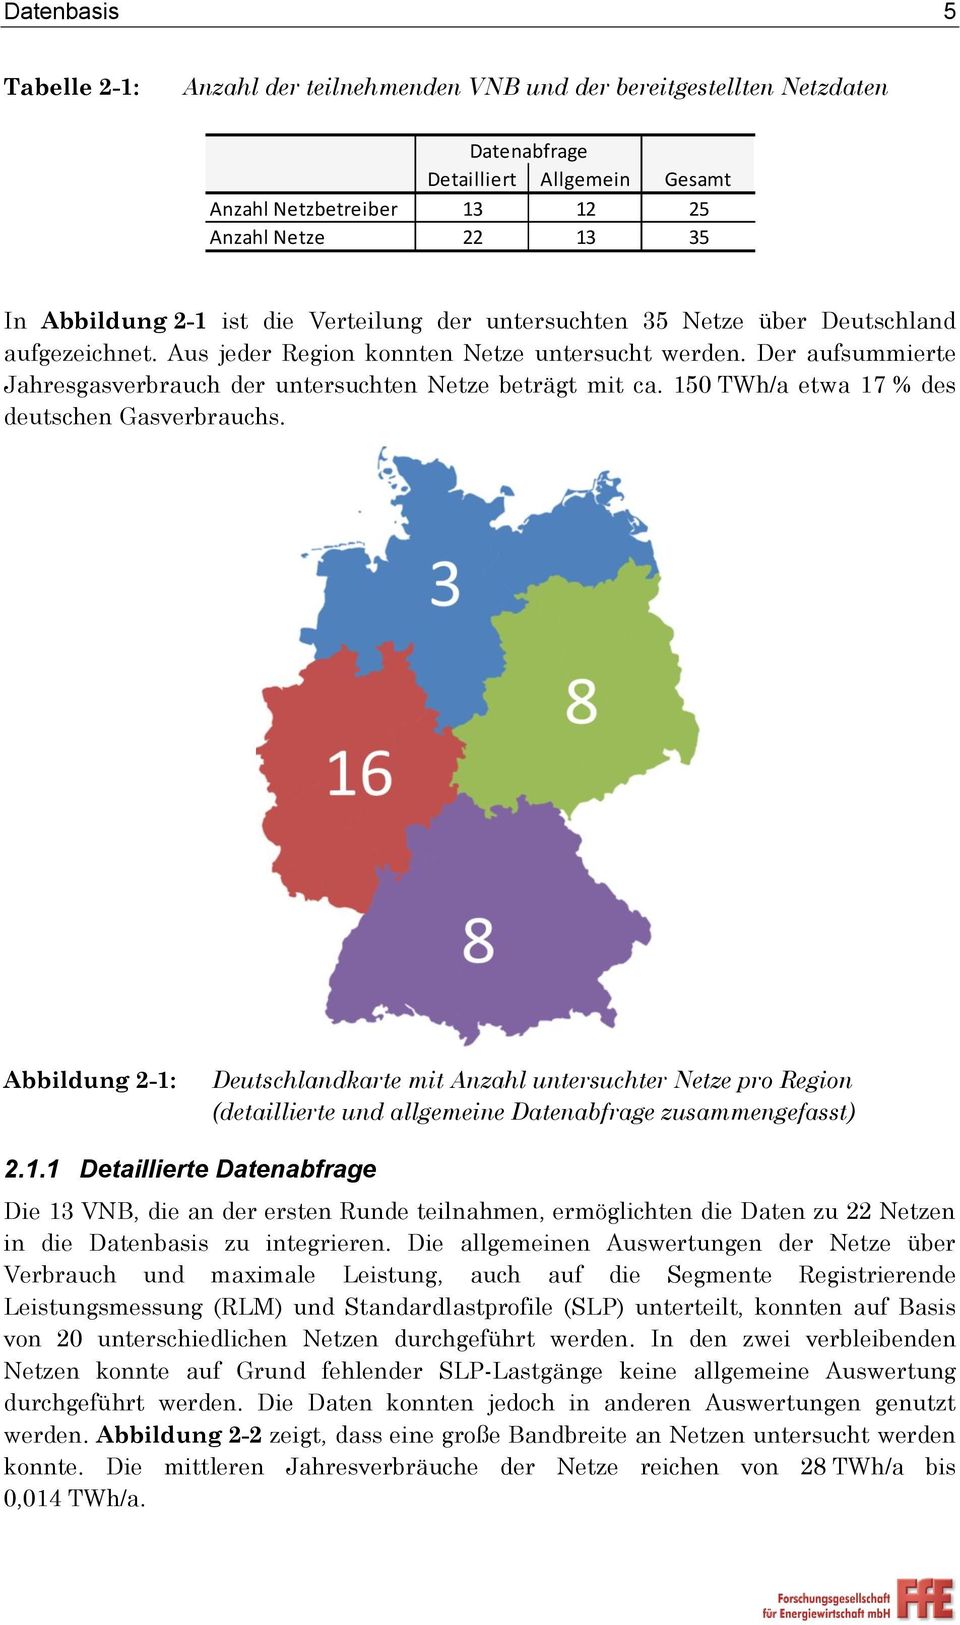 Der aufsummierte Jahresgasverbrauch der untersuchten Netze beträgt mit ca. 150 TWh/a etwa 17 % des deutschen Gasverbrauchs.